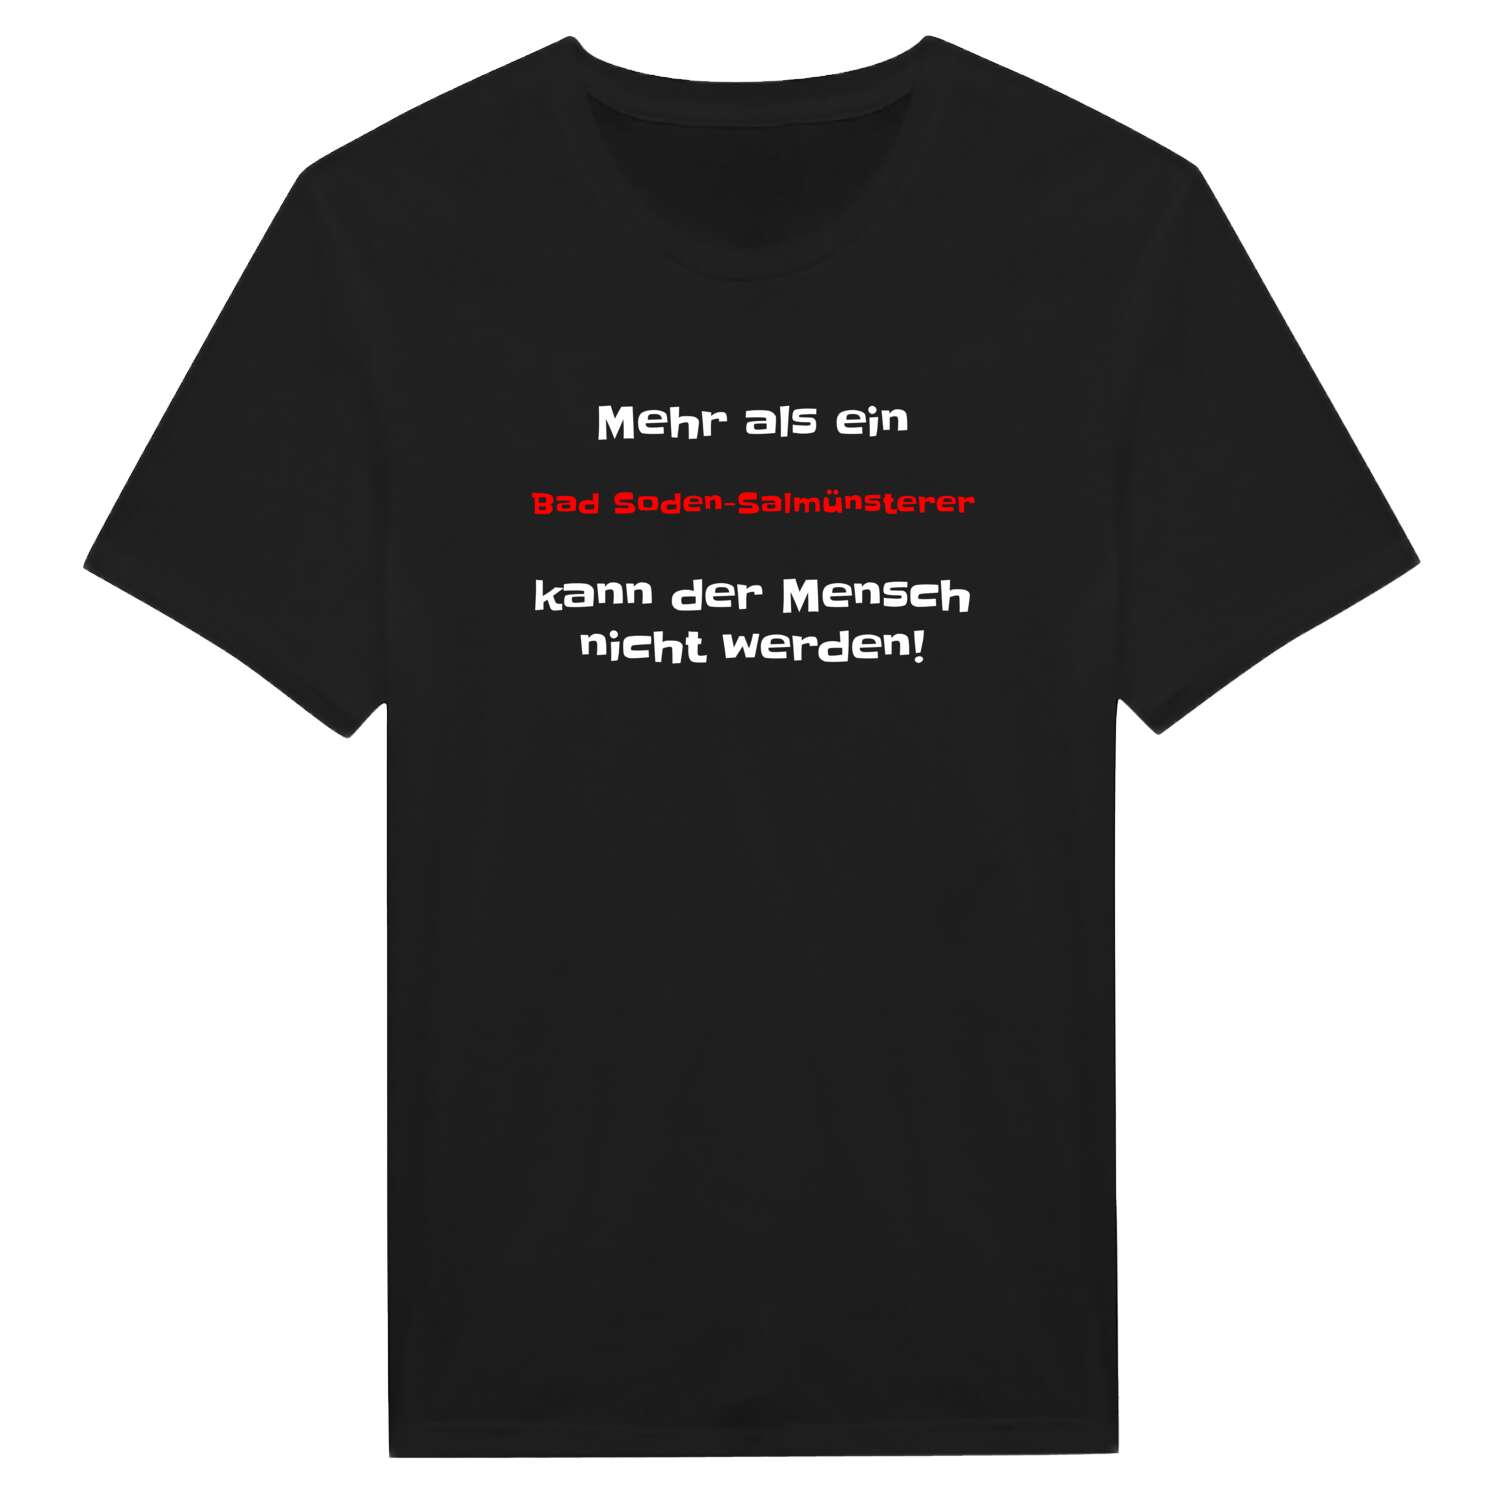 Bad Soden-Salmünster T-Shirt »Mehr als ein«